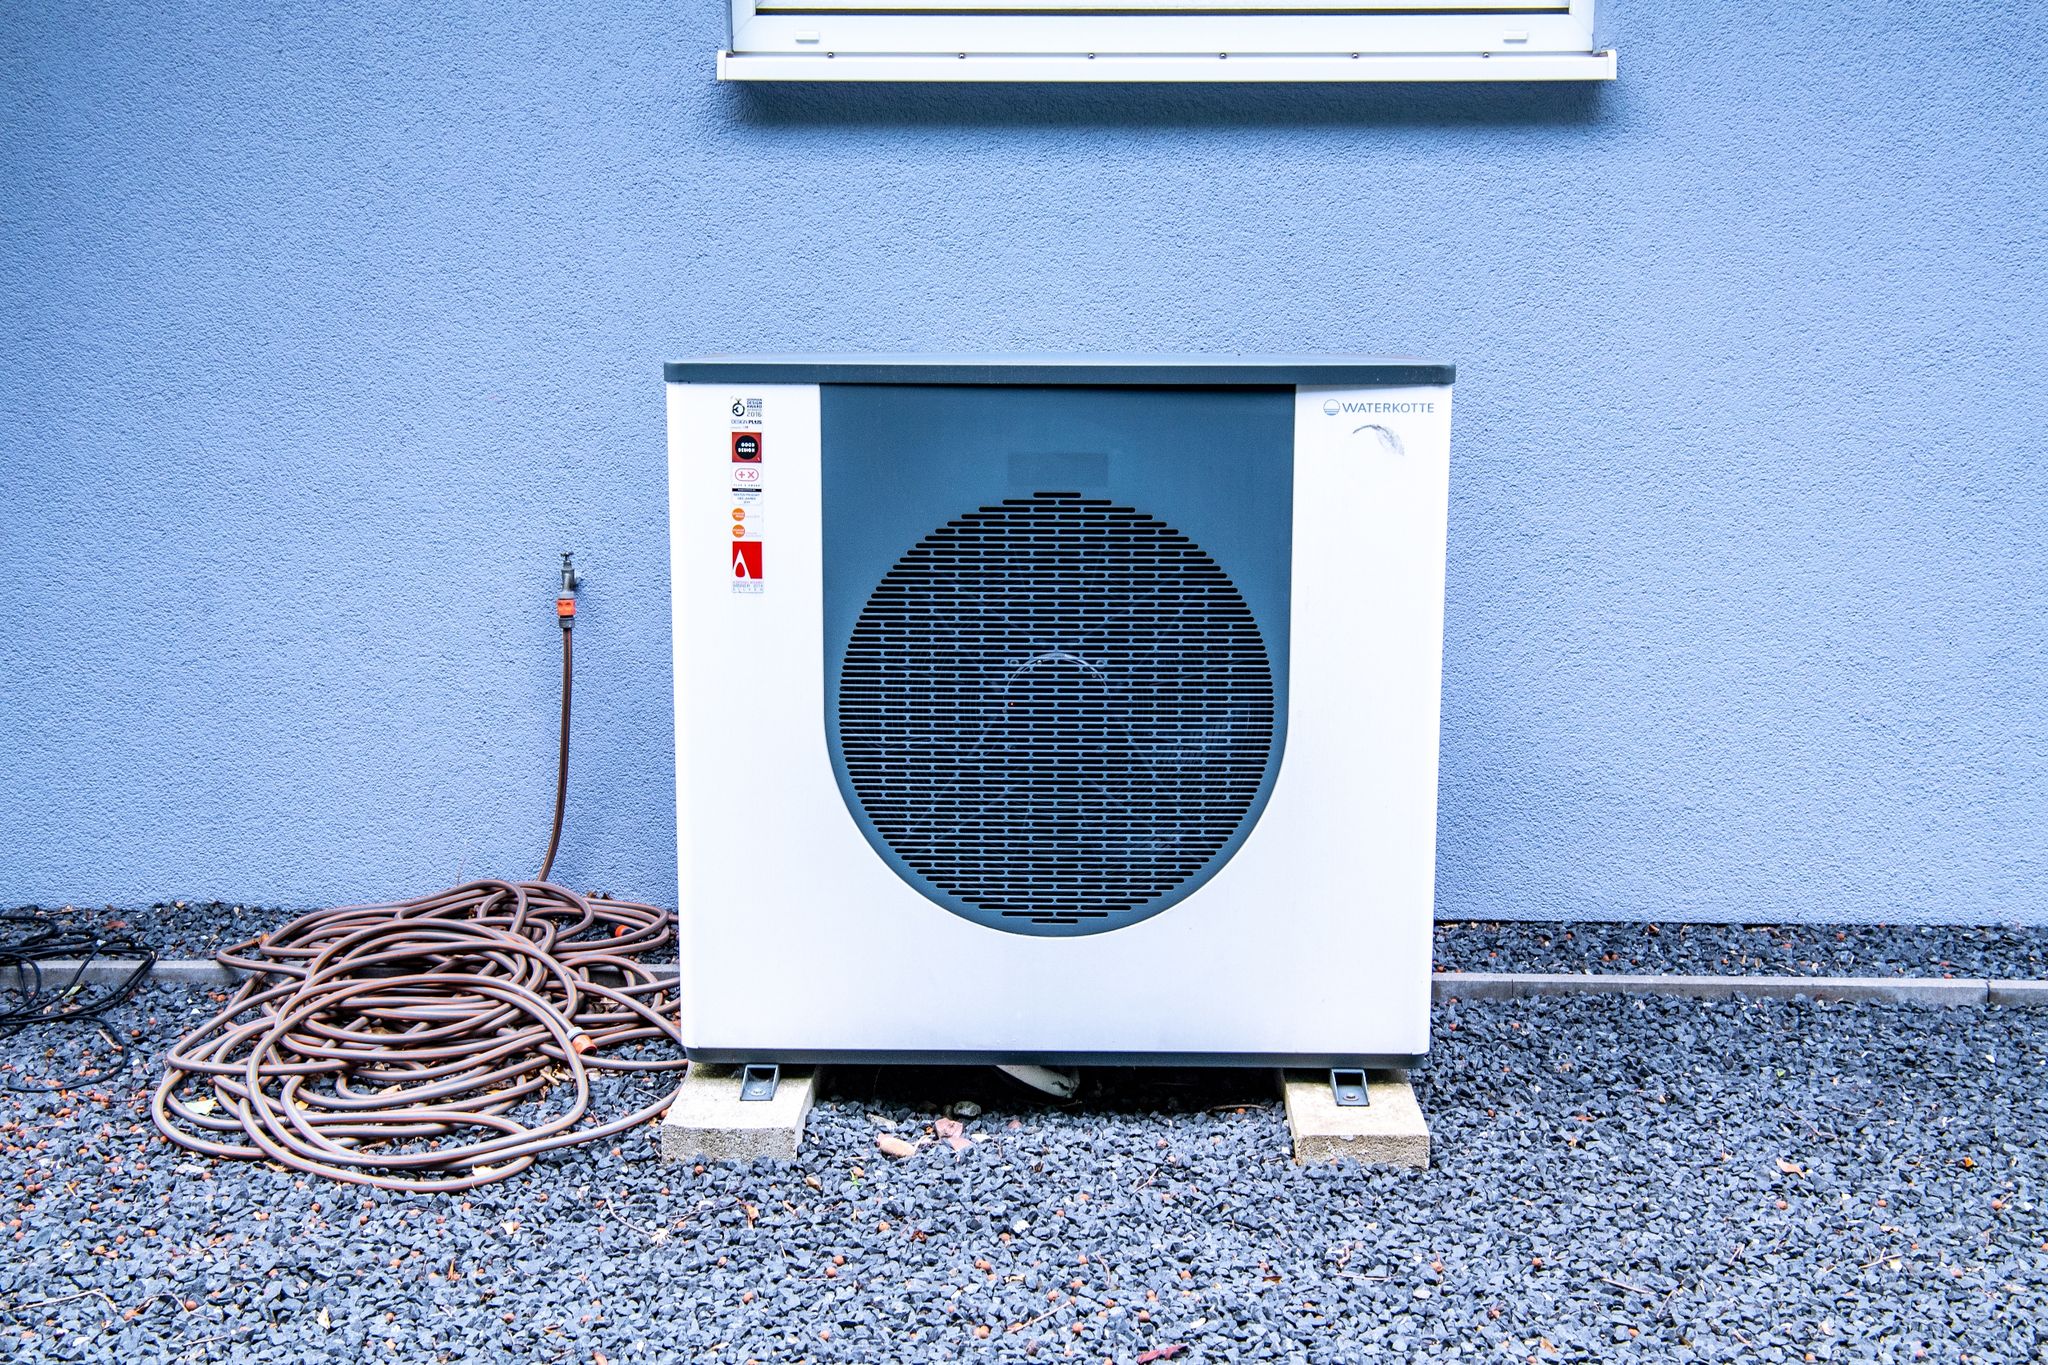 Wärmepumpenbesitzer können von einem Wärmestromtarif profitieren, der jedoch mindestens einen separaten Stromzähler erfordert.